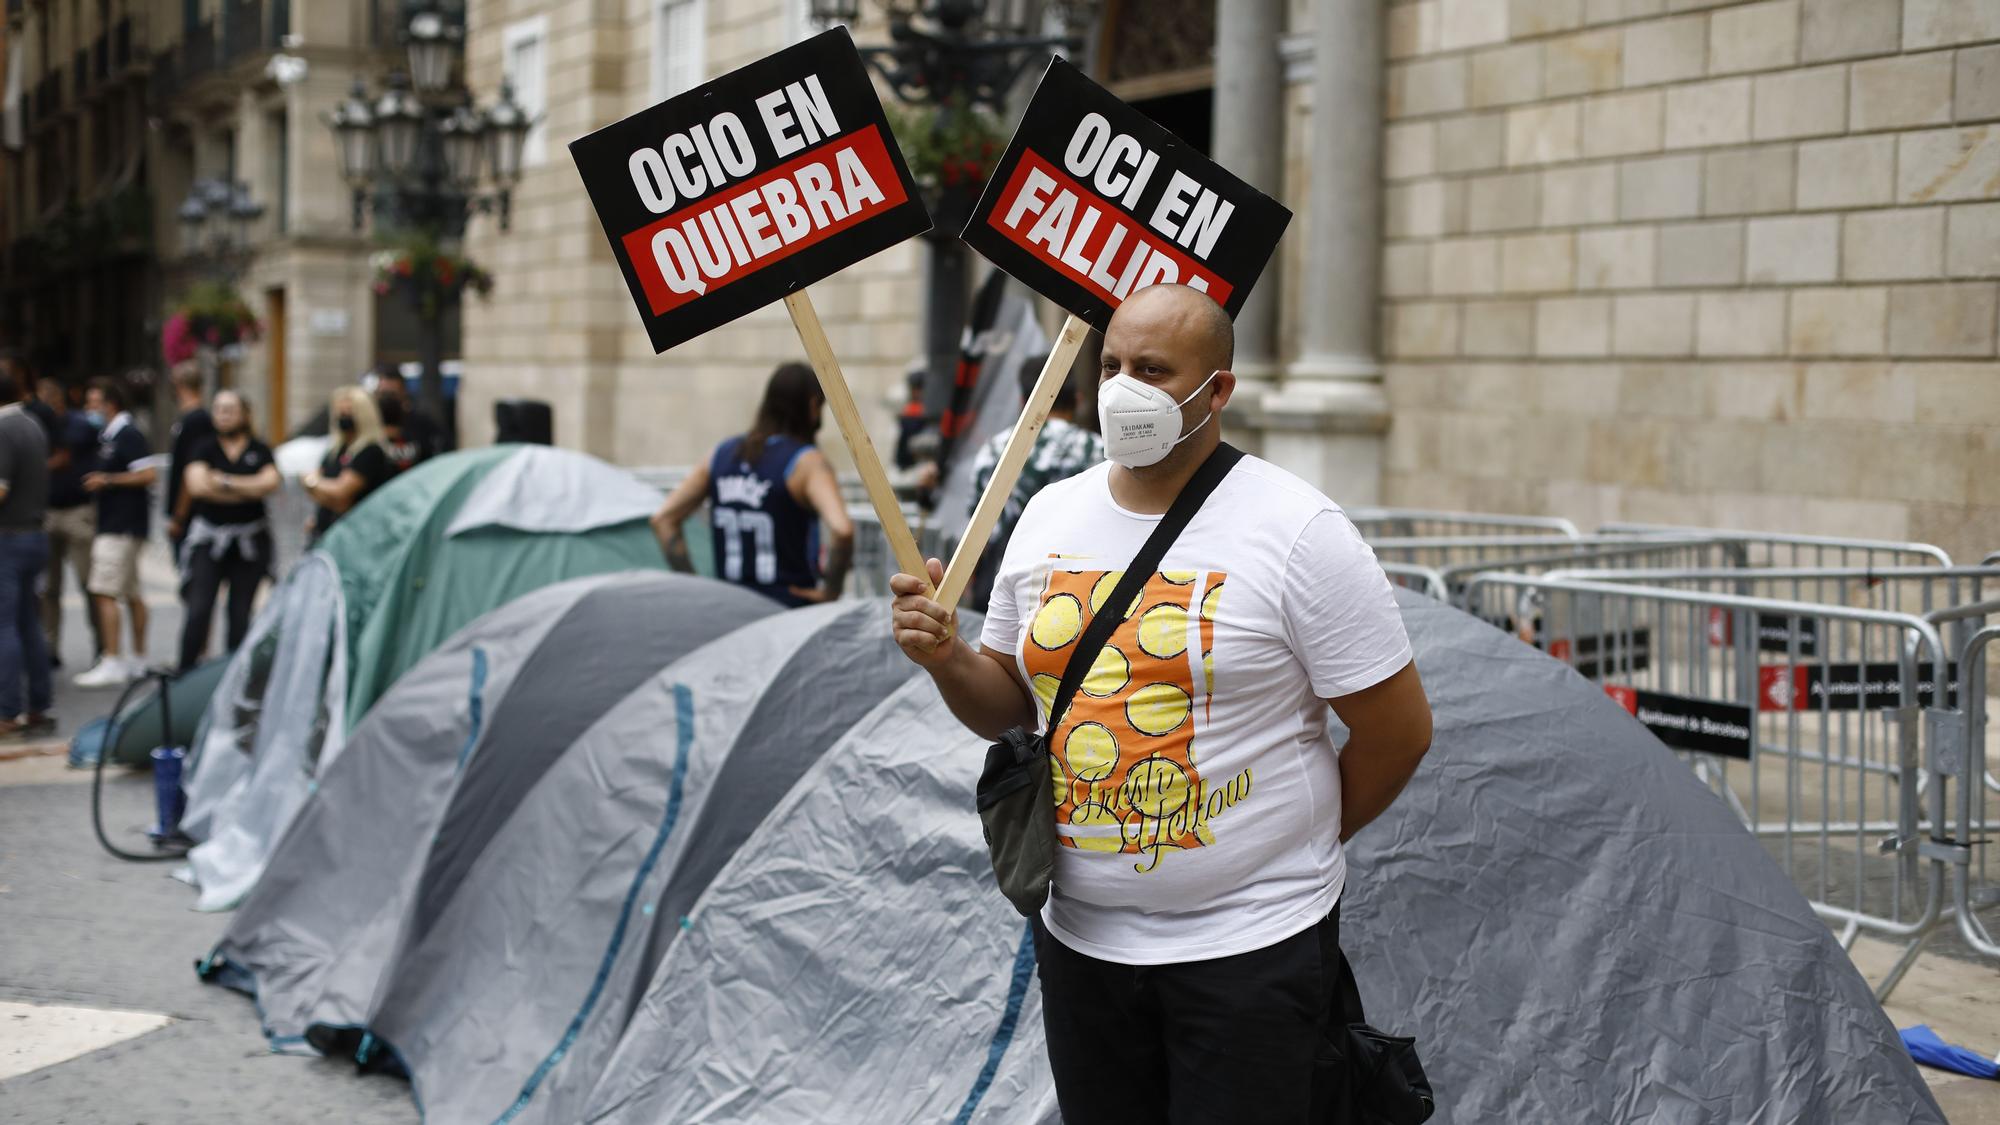 Primera noche de acampada y huelga de hambre de empresarios de ocio nocturno en Barcelona